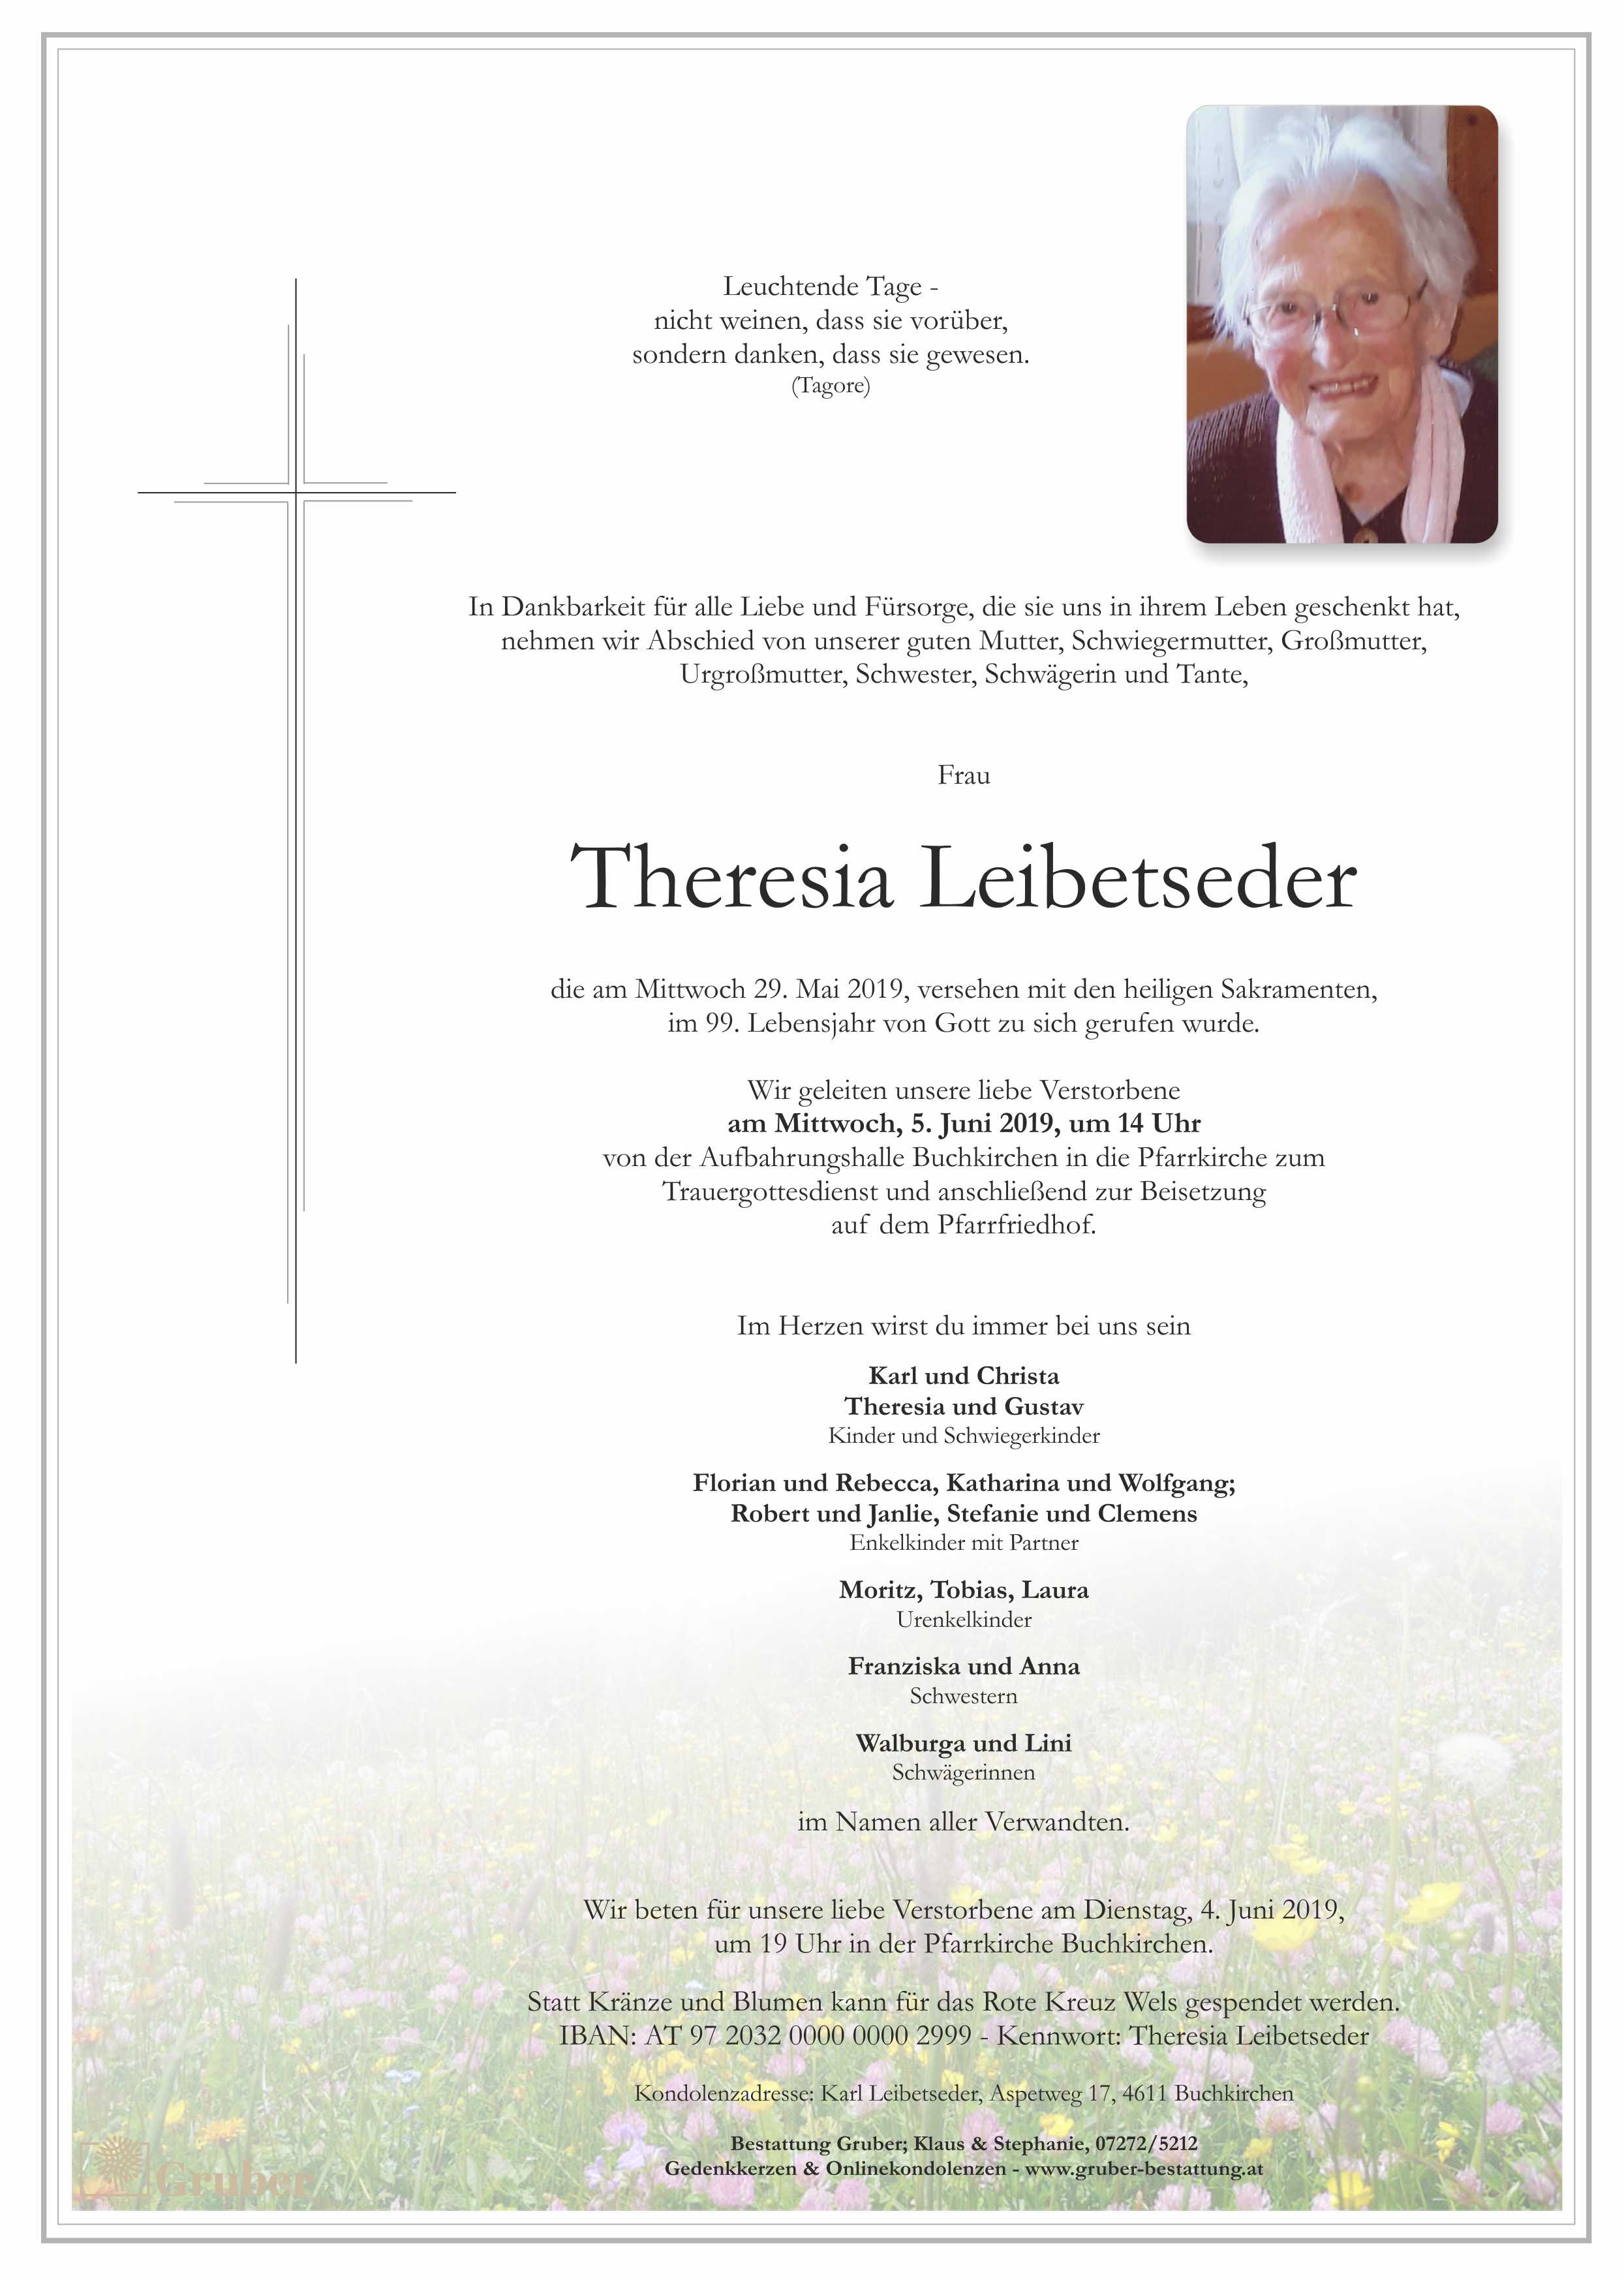 Theresia Leibetseder (Buchkirchen)